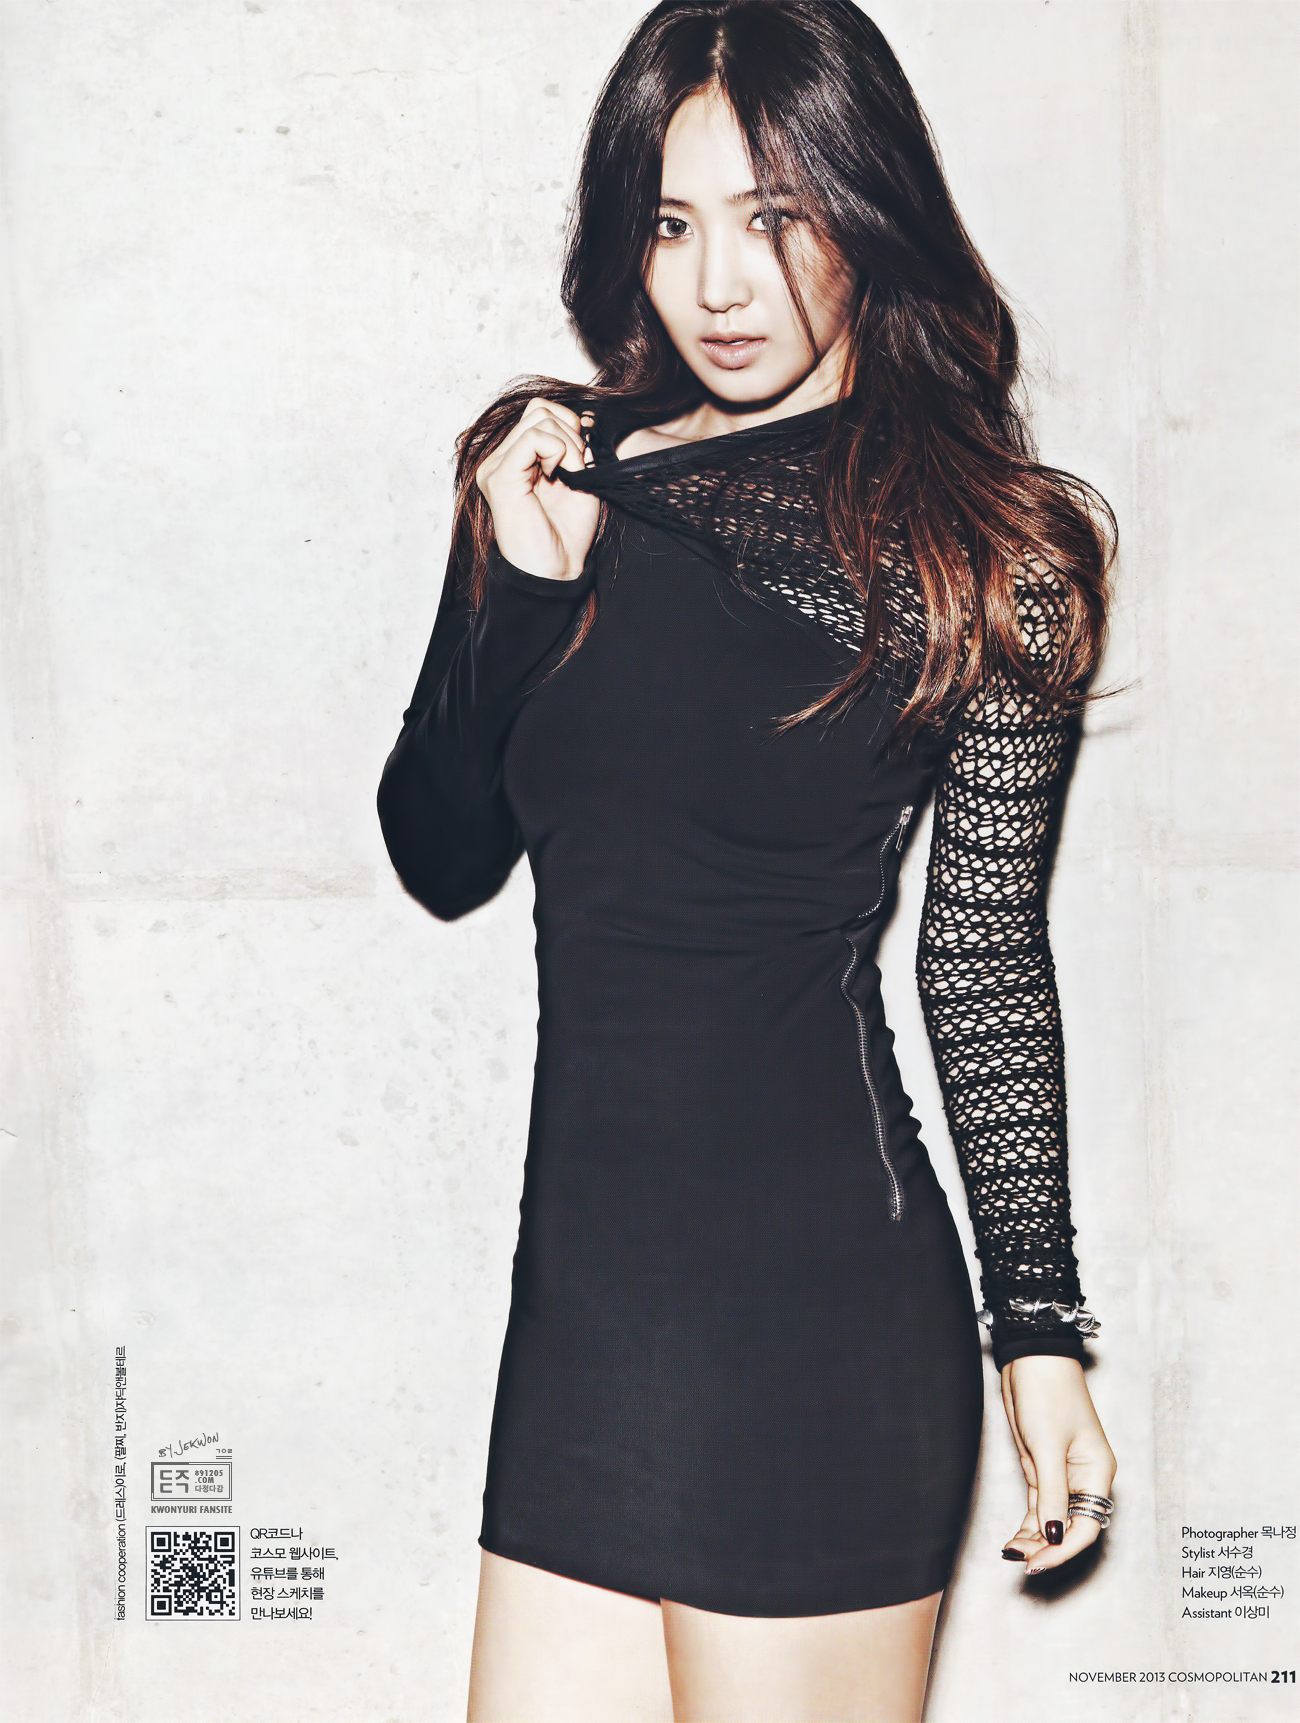 [PIC][17-10-2013]Yuri đầy quyến rũ trên ấn phẩm tháng 11 của tạp chí "Cosmopolitan" 2129CB365264CE5E207E03